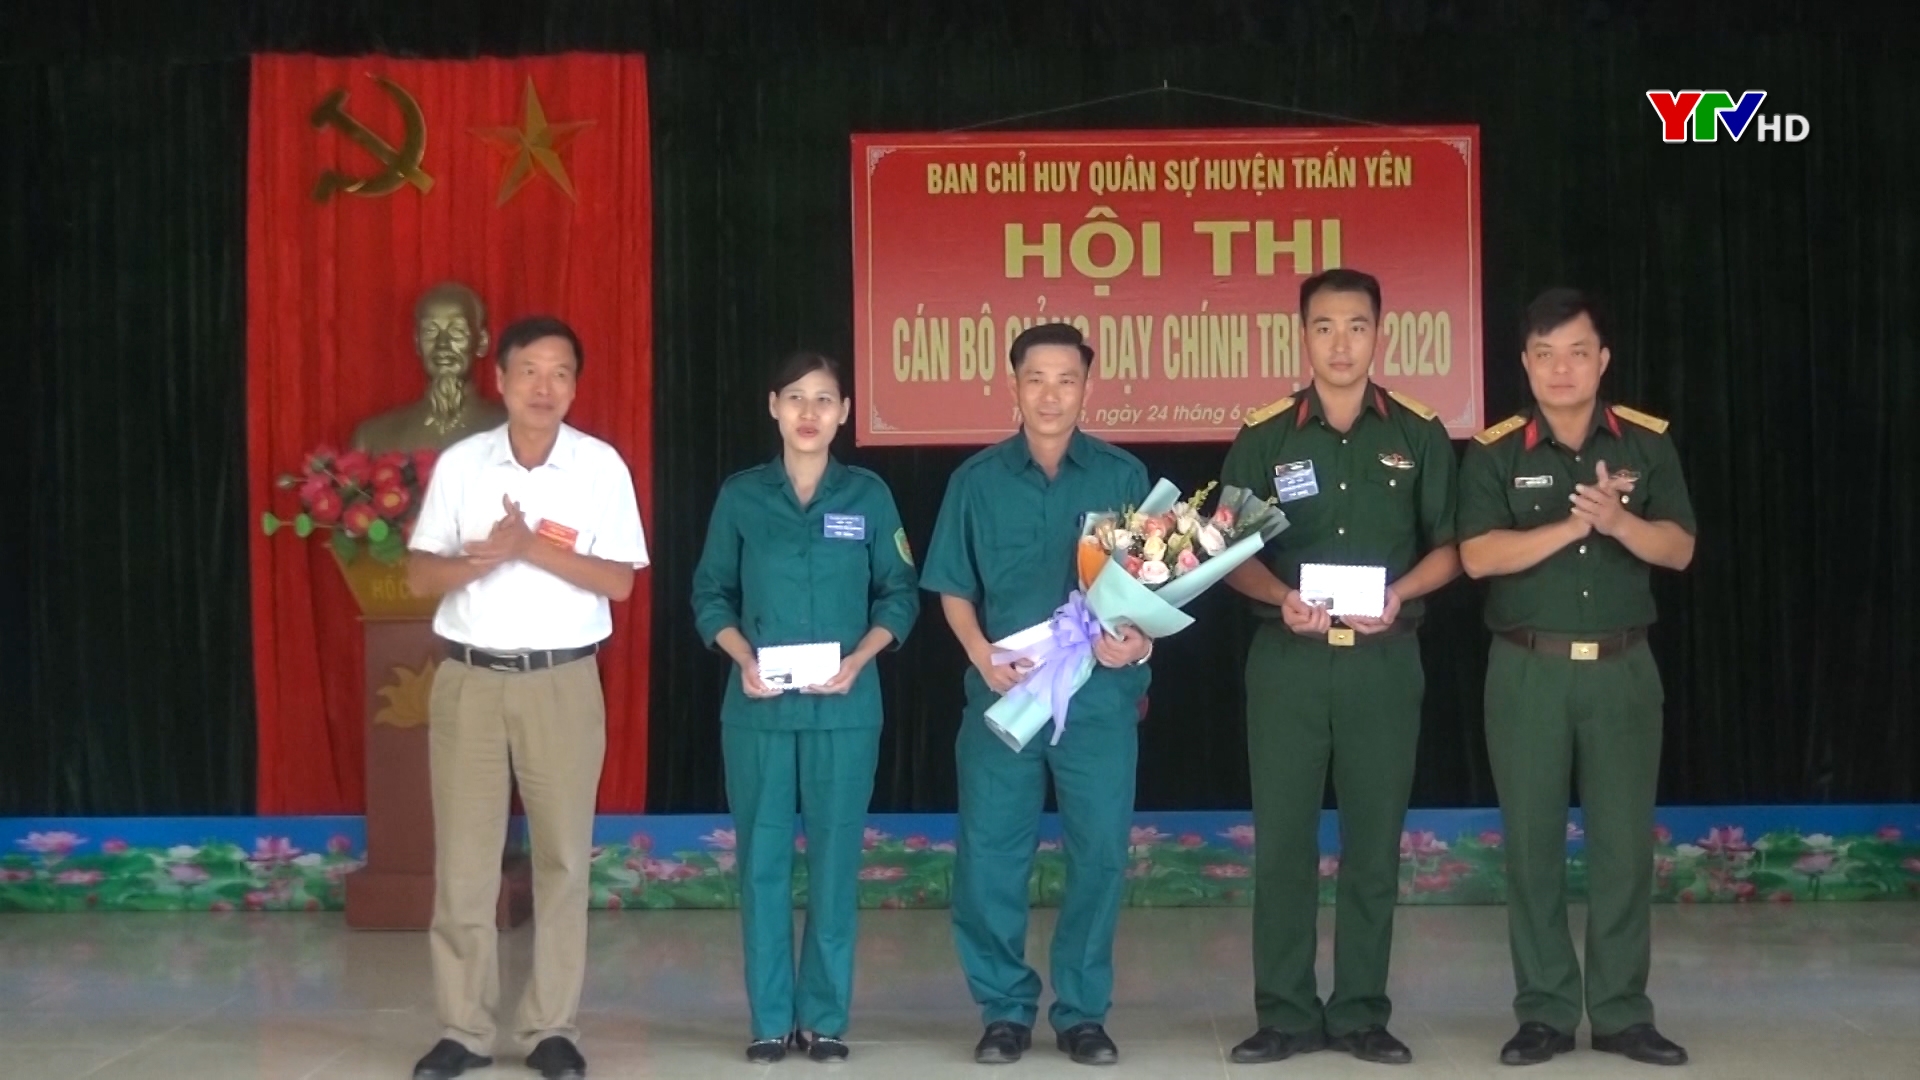 Ban CHQS huyện Trấn Yên tổ chức Hội thi "Cán bộ giảng dạy chính trị năm 2020"